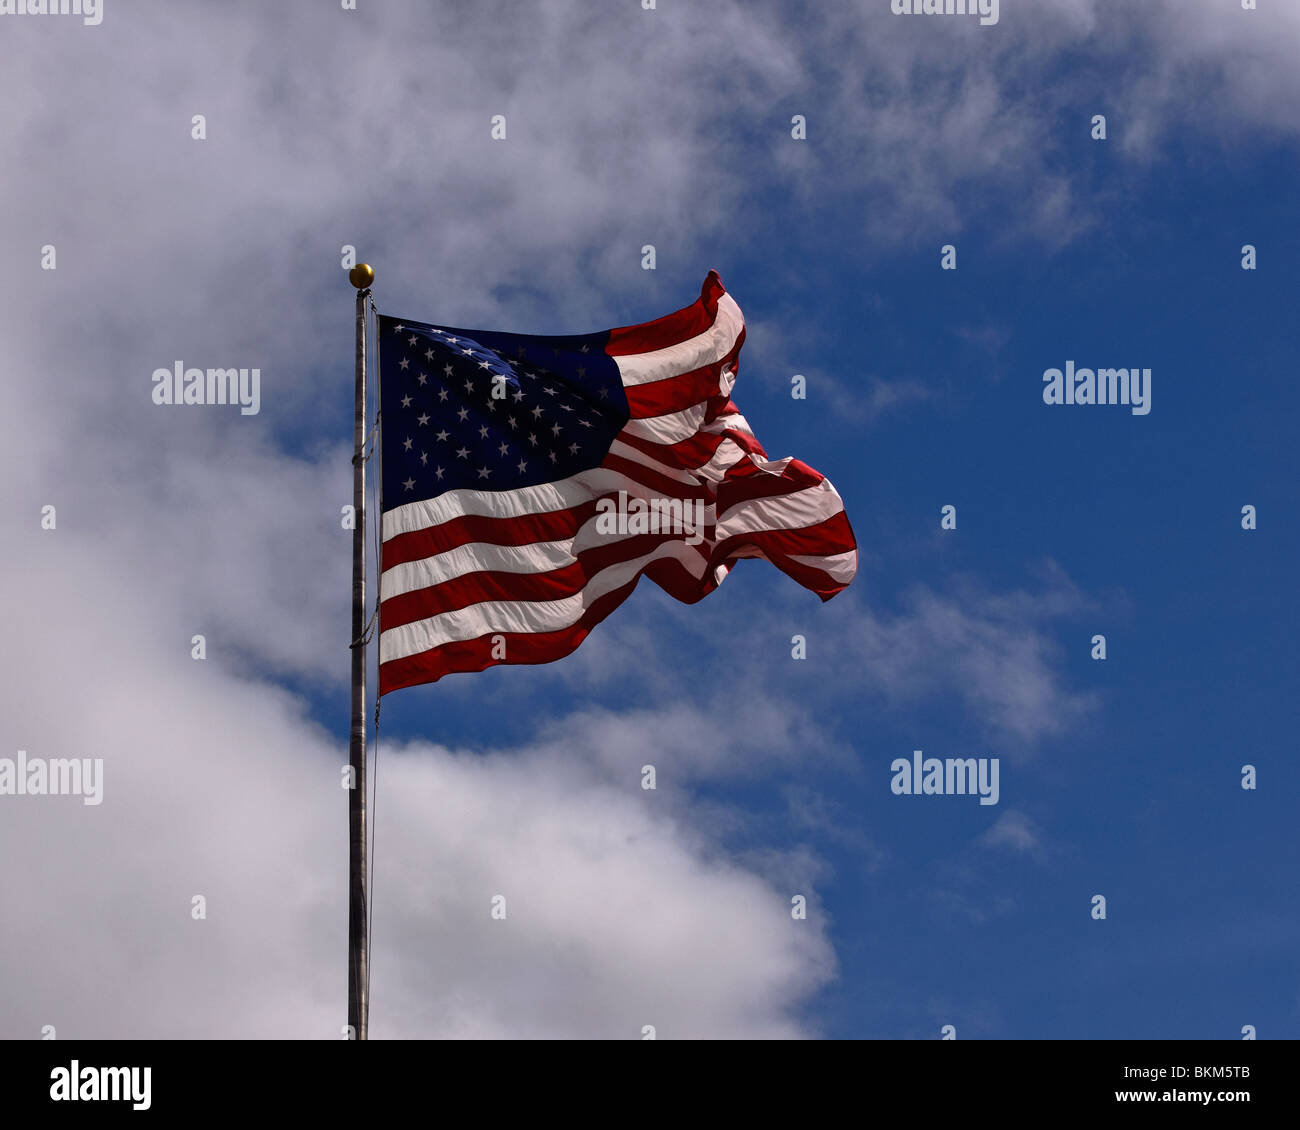 Amerikanische Flagge gegen blauen Himmel Wolke gefüllt. In Süd-Texas getroffen. Stock Fotografie von cahyman Stockfoto